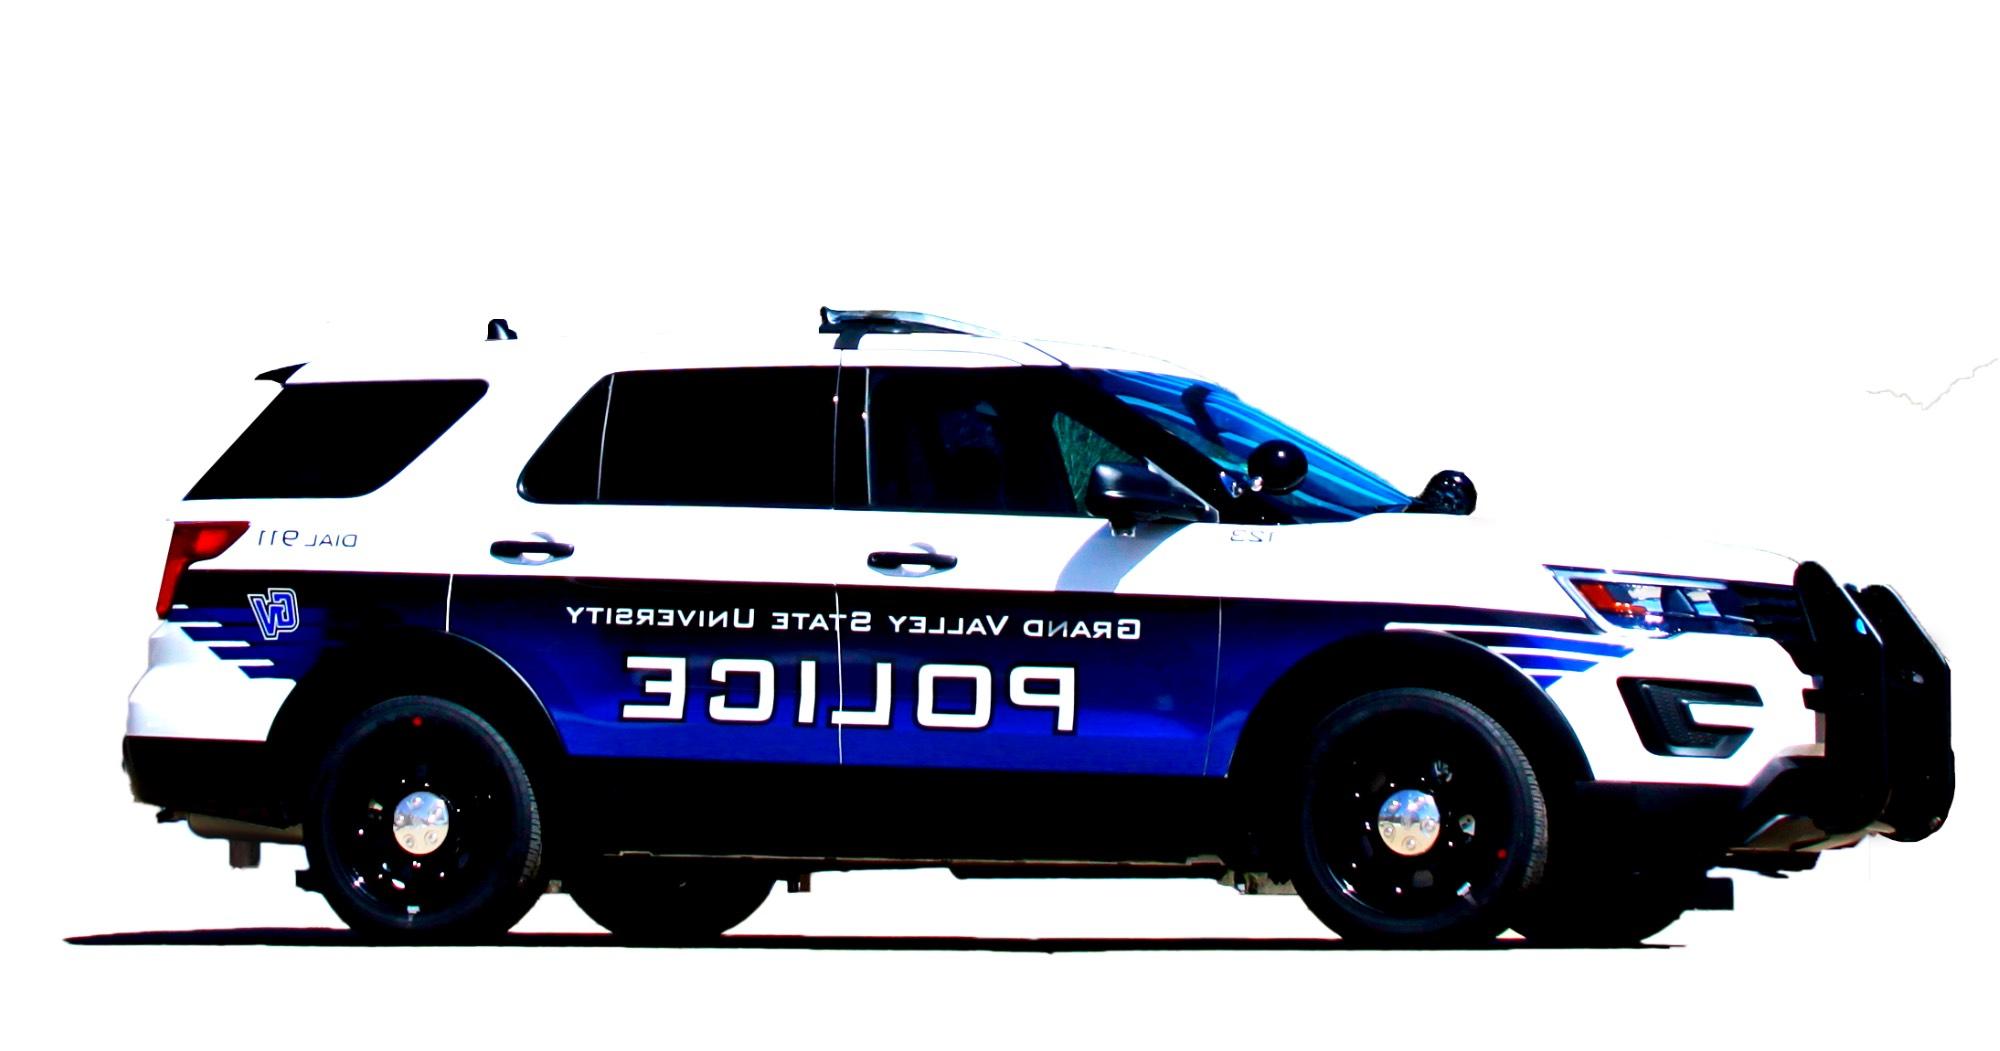 加州警局巡逻车